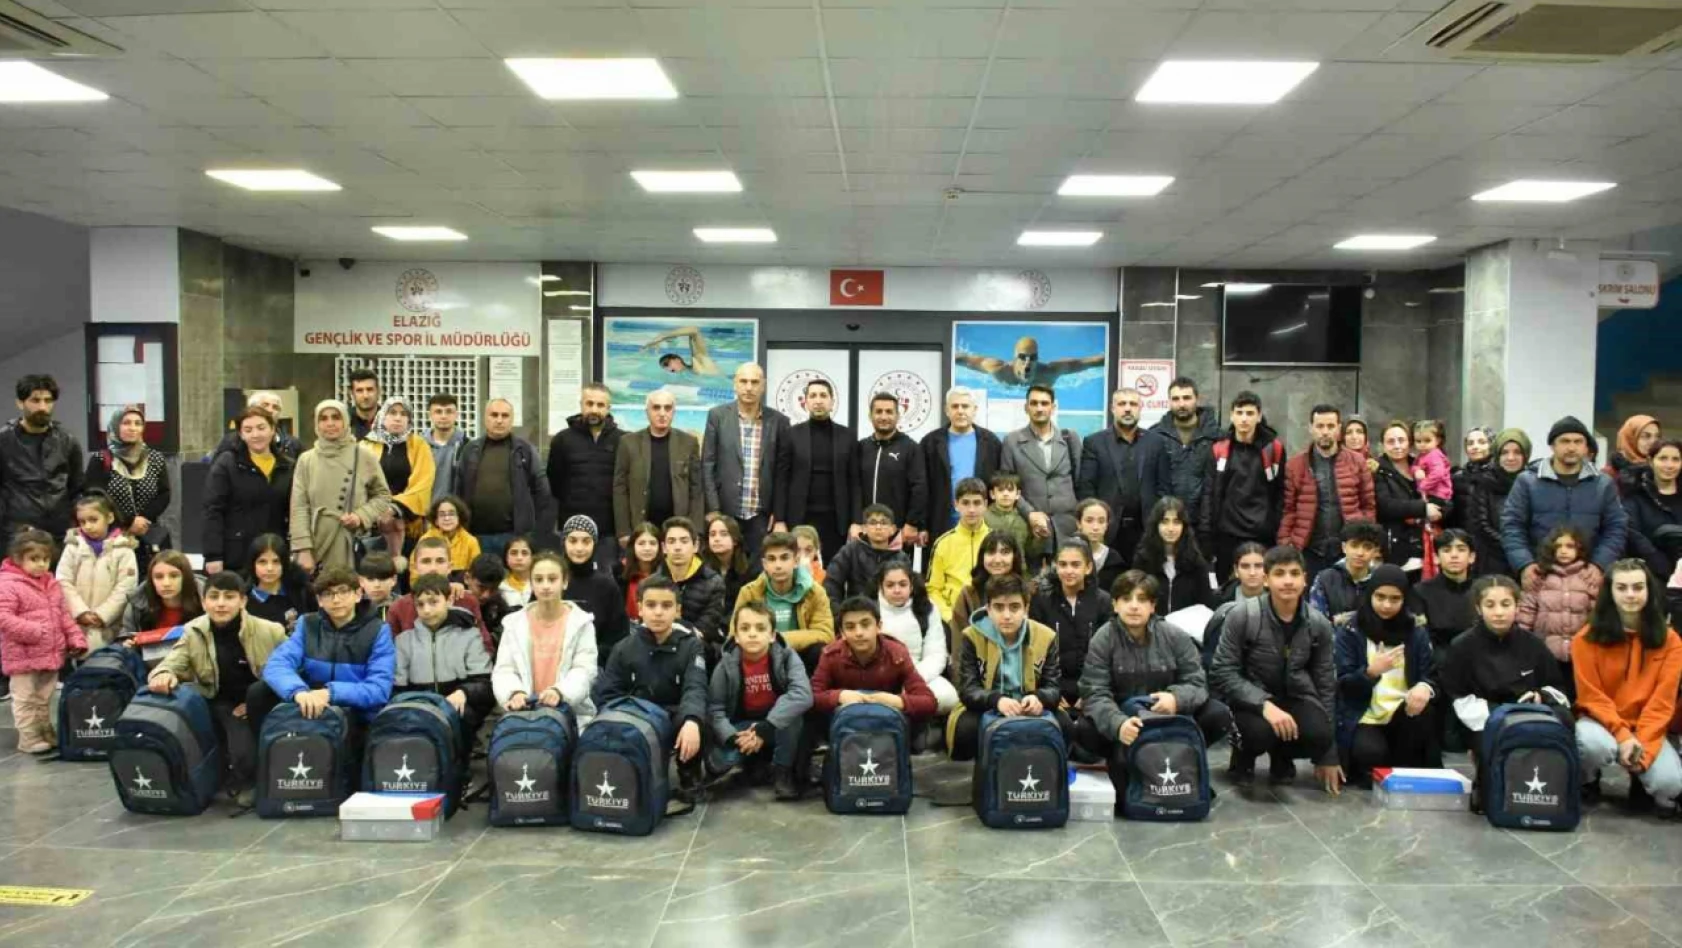 Elazığ'da 51 sporcu ve 9 antrenöre spor malzemesi dağıtıldı